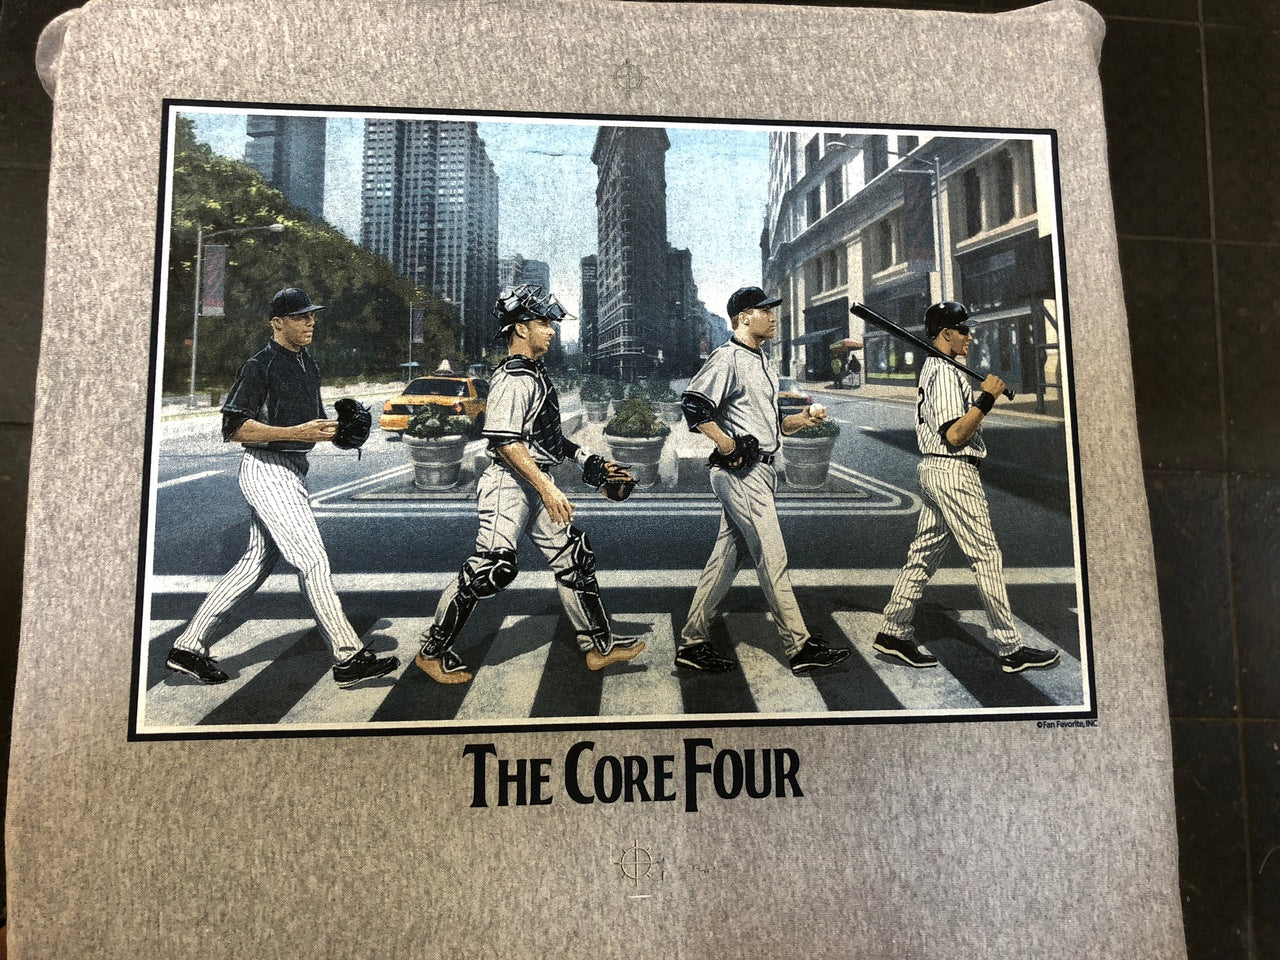 Core Four T-Shirt